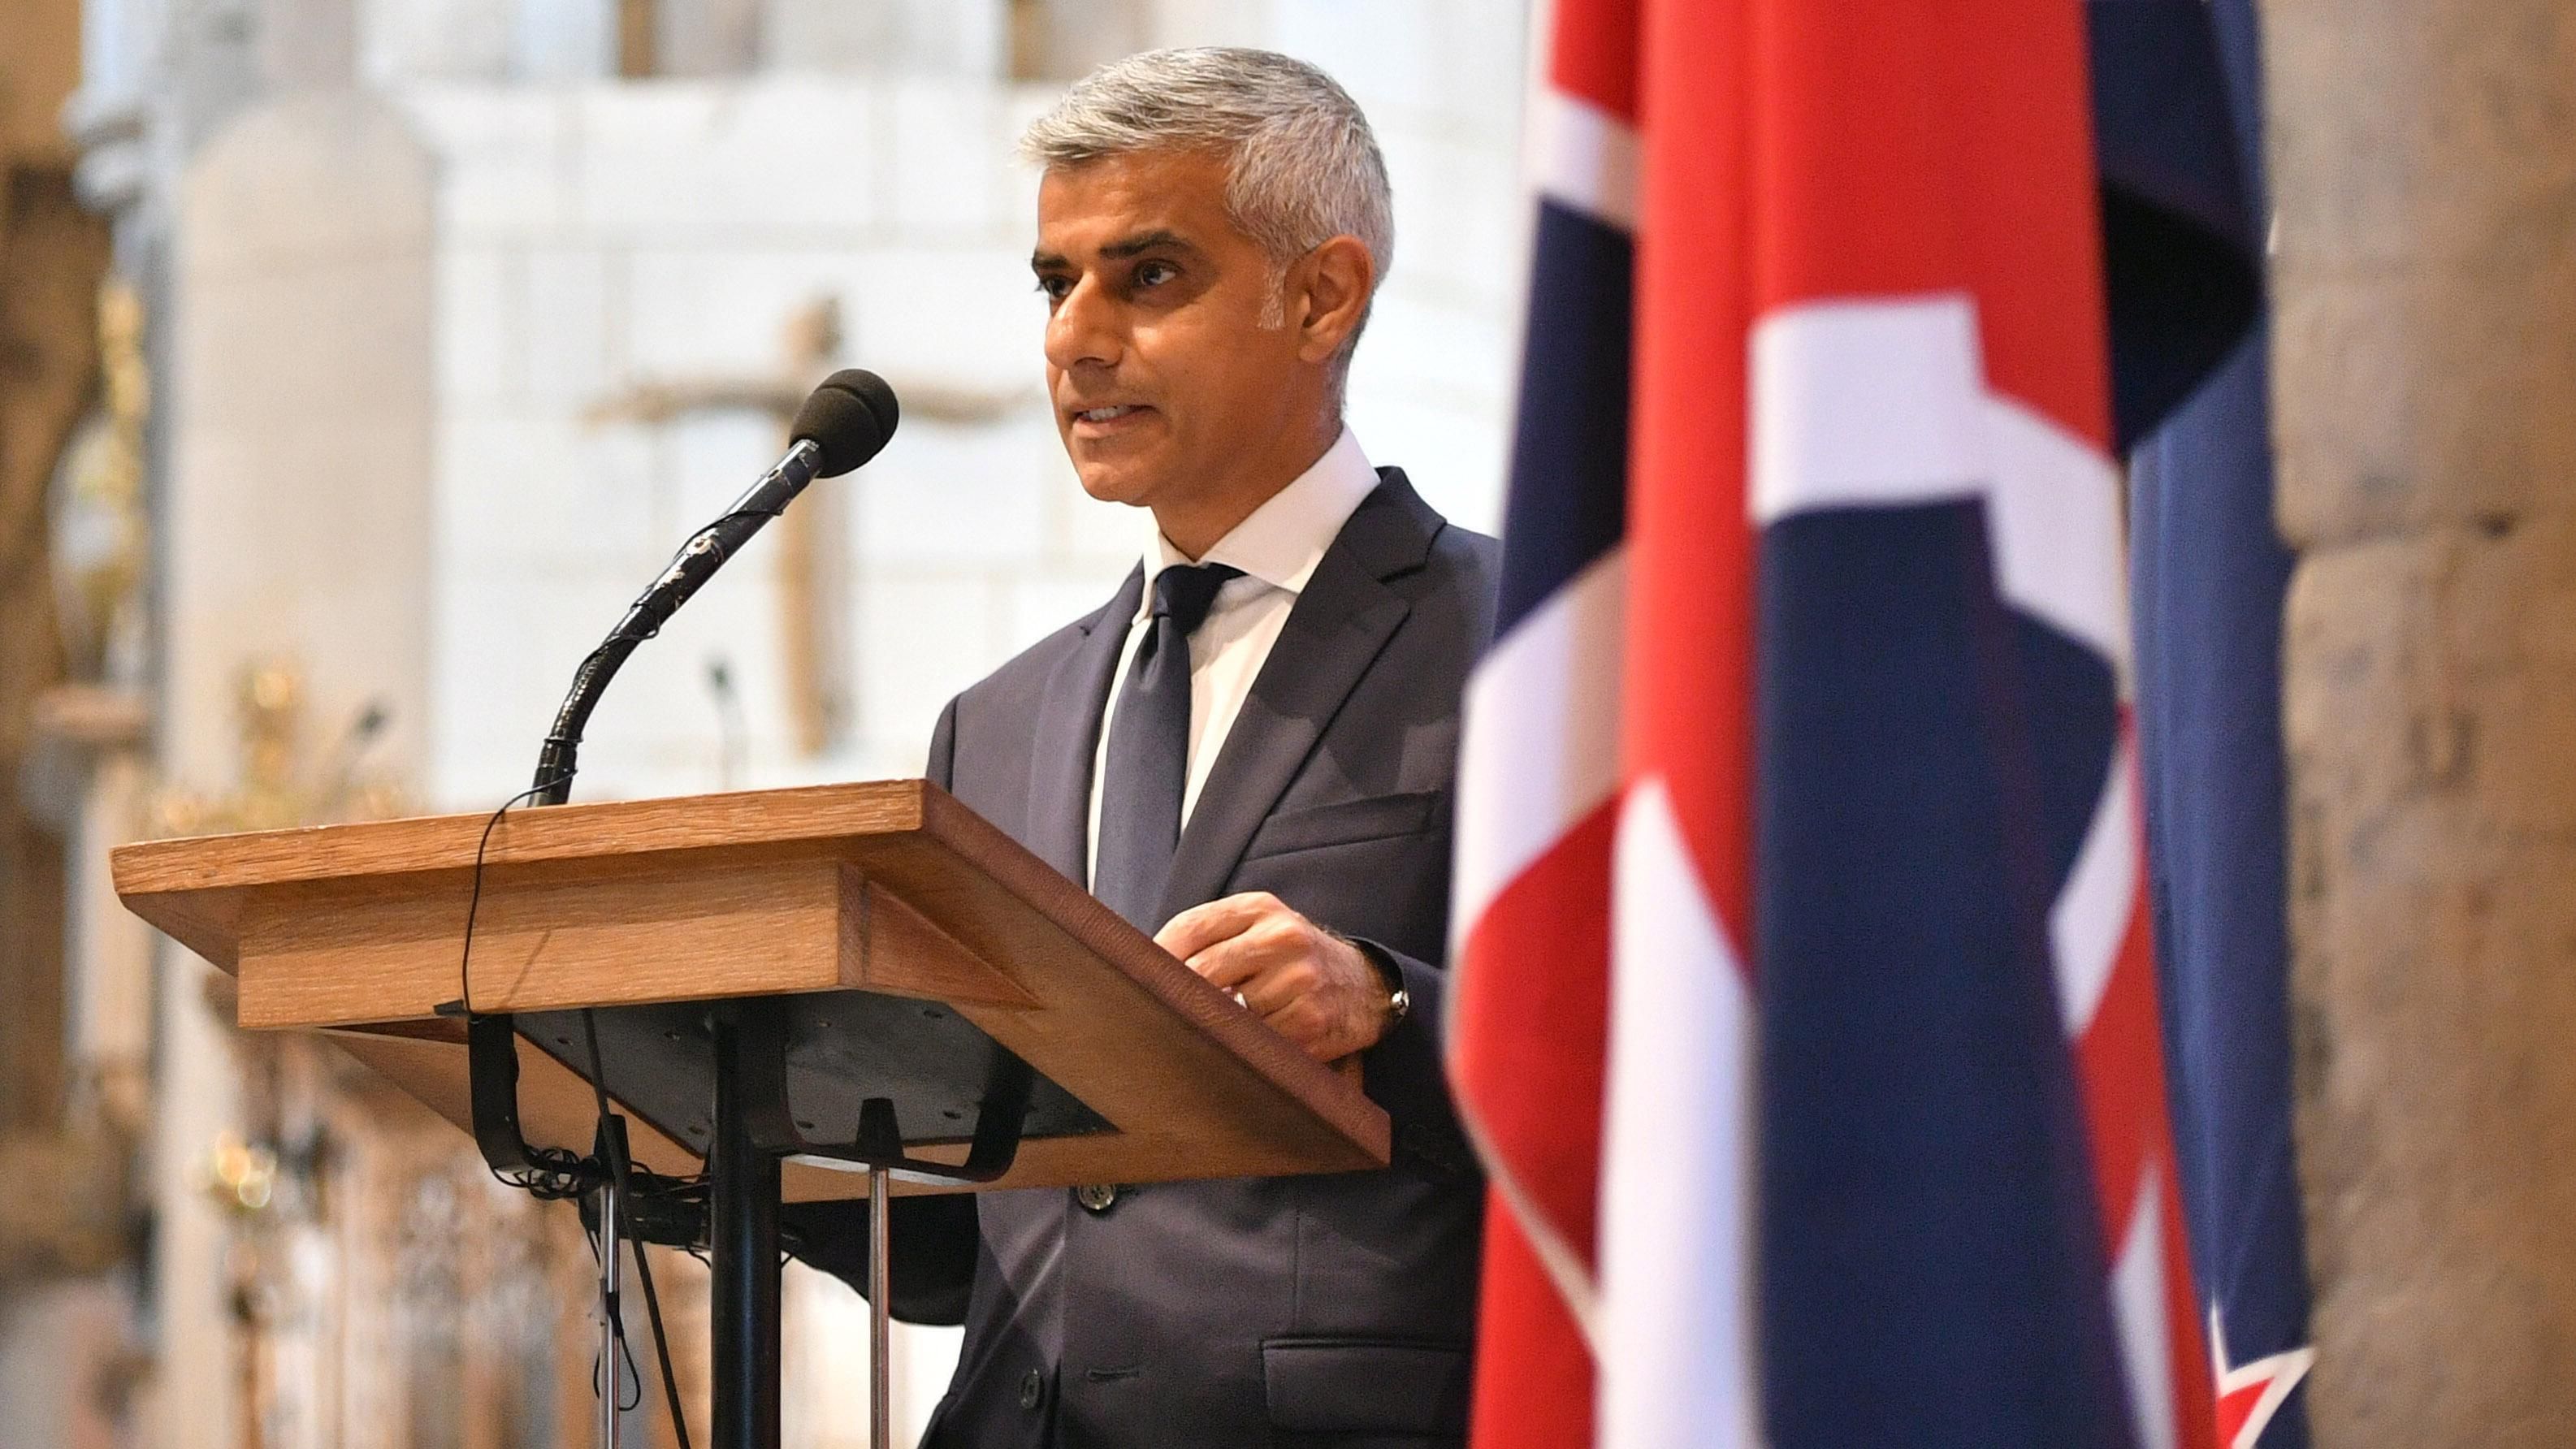 Мэр Лондона выдвинул неожиданное предложение британскому правительству относительно Brexit